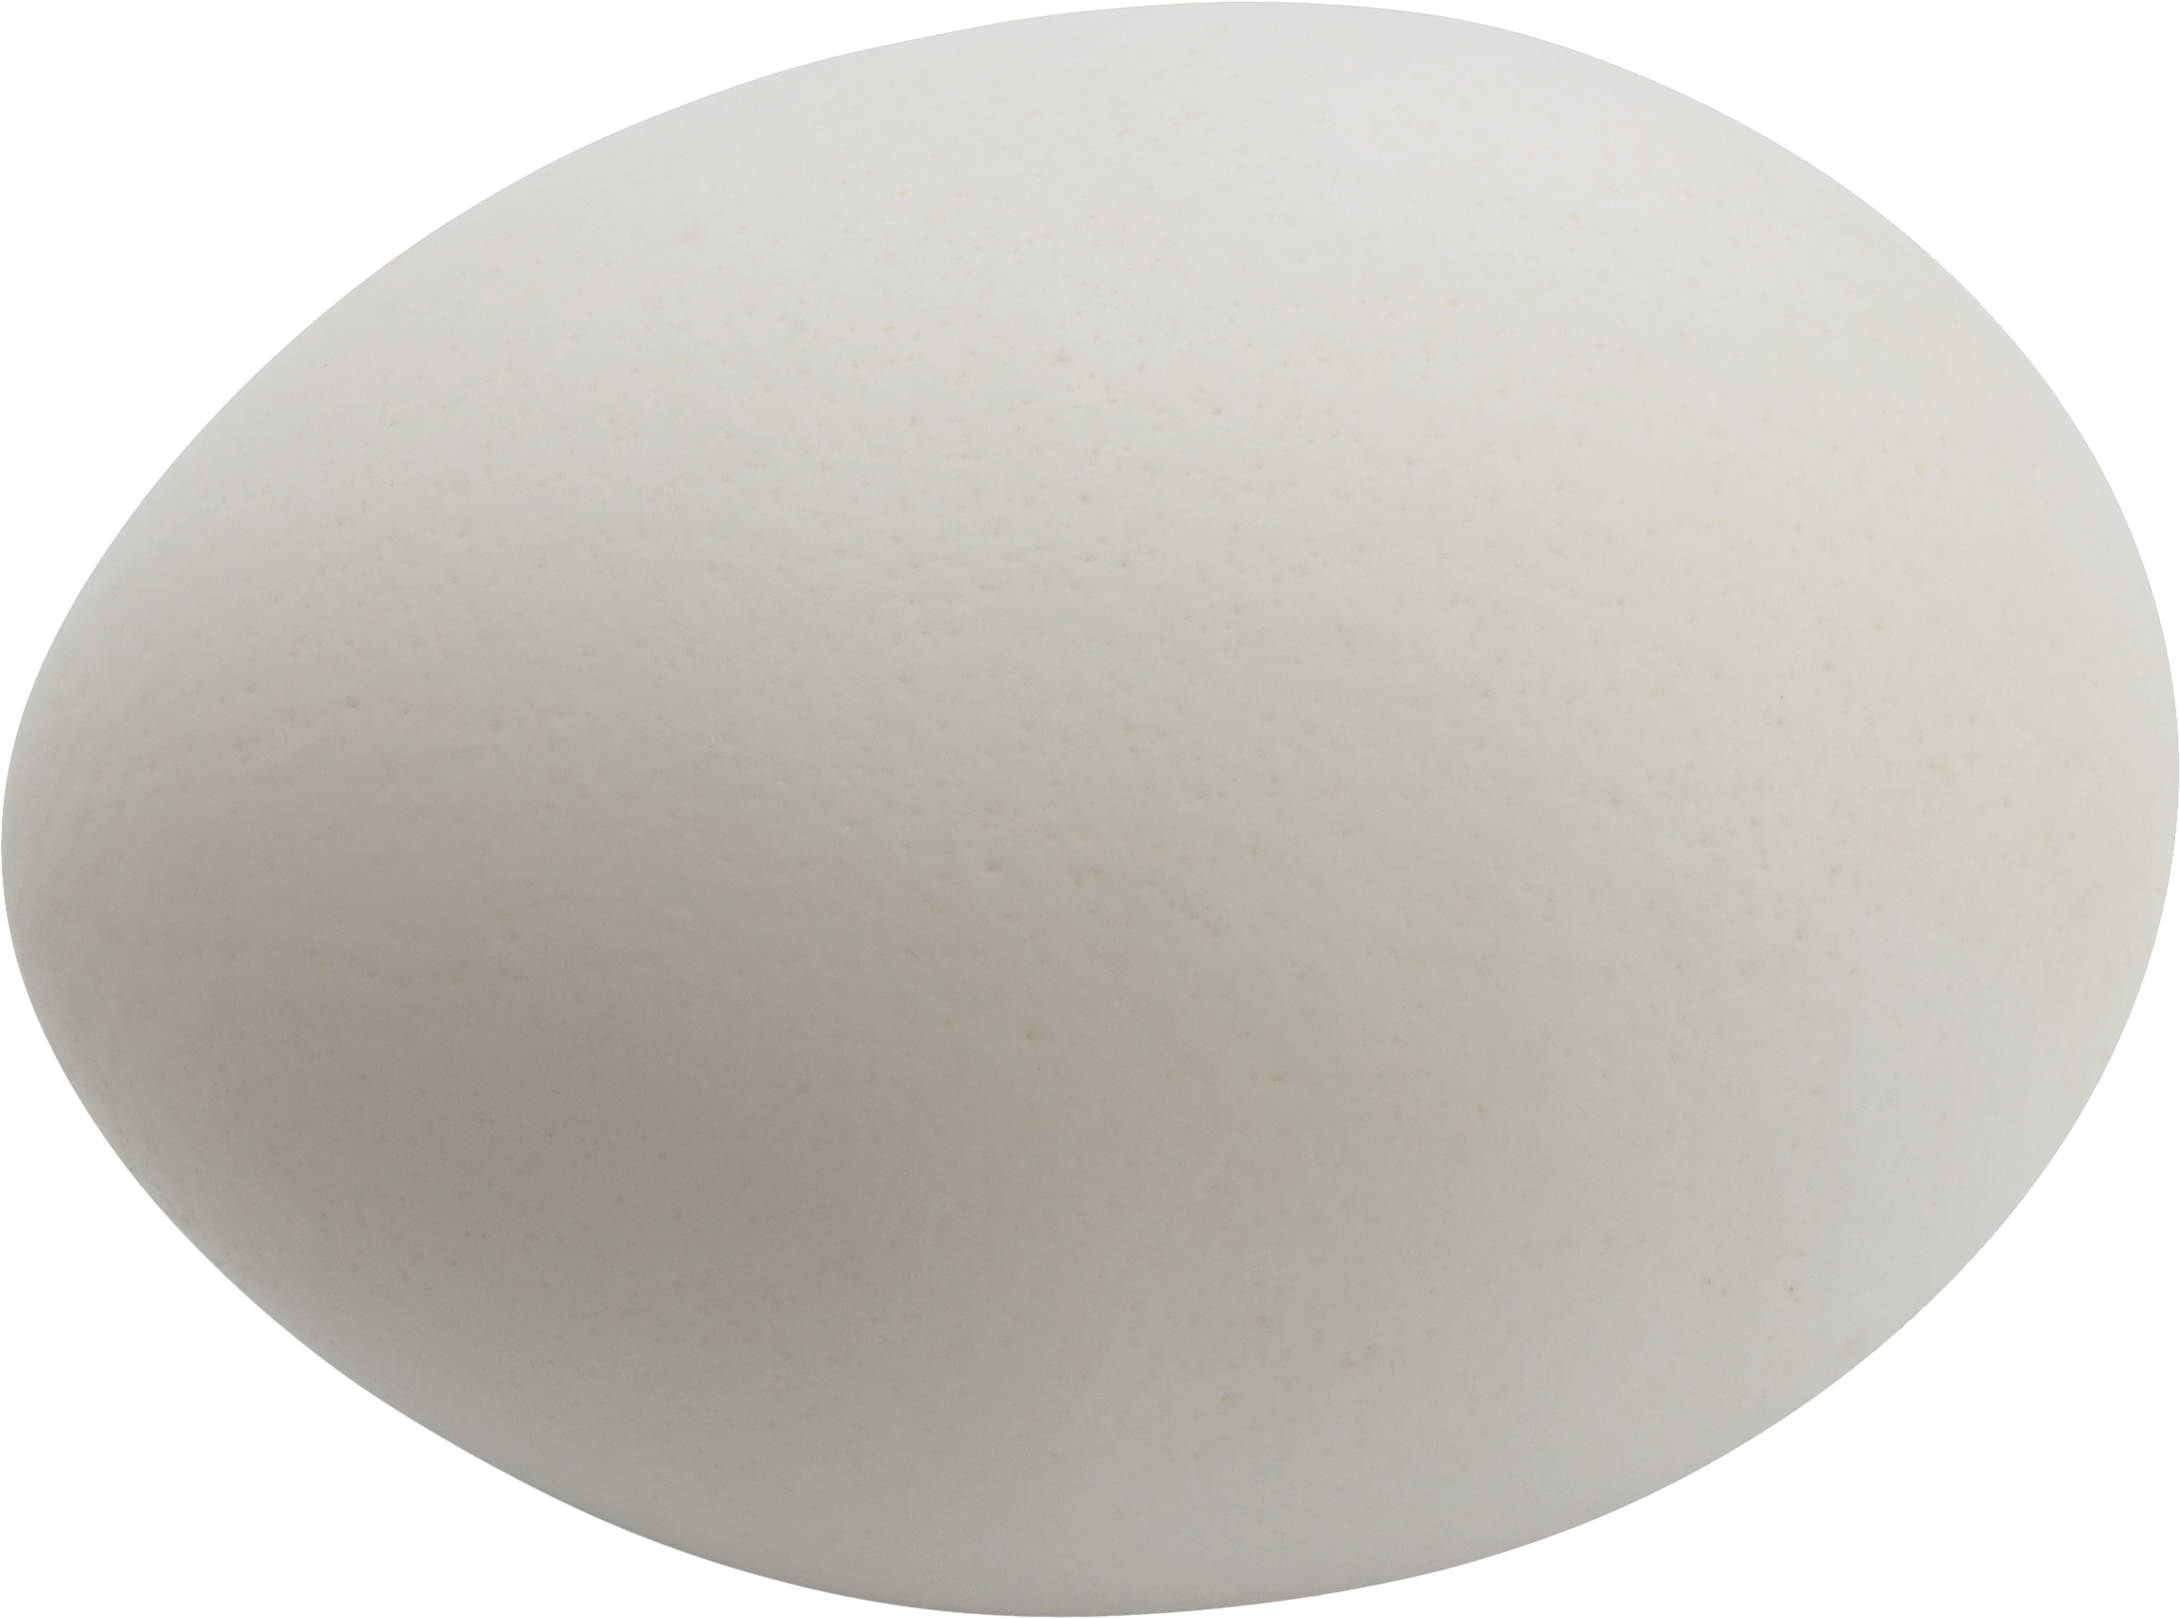 Uovo bianco